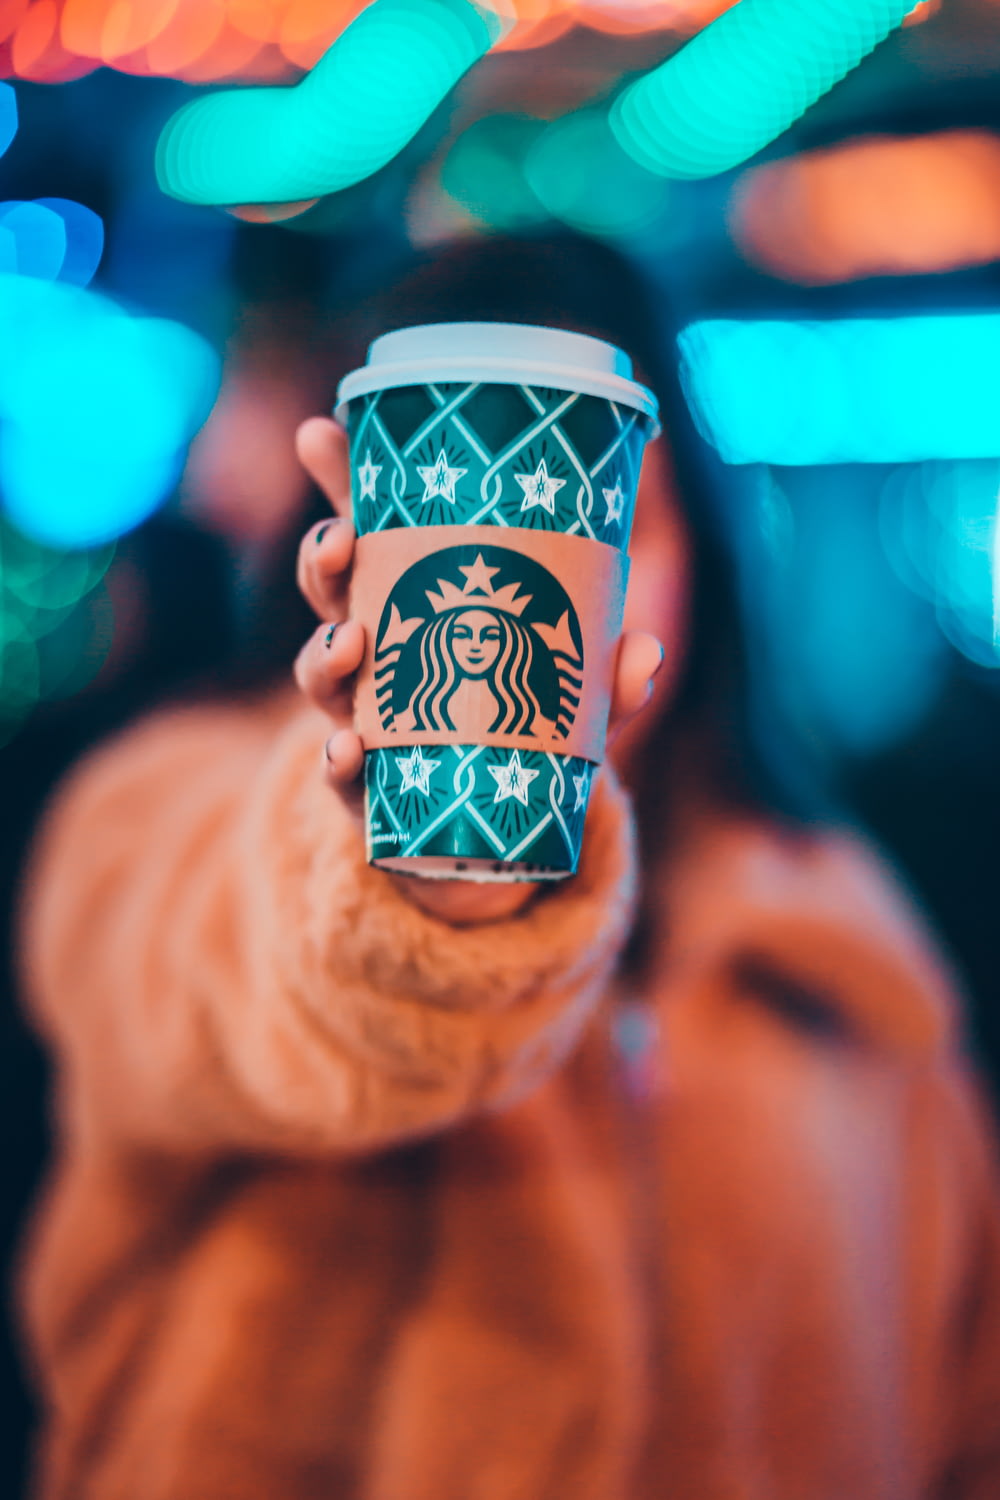 Frau auf brauner Jacke zeigt grüne und braune Starbucks-Kaffeetasse